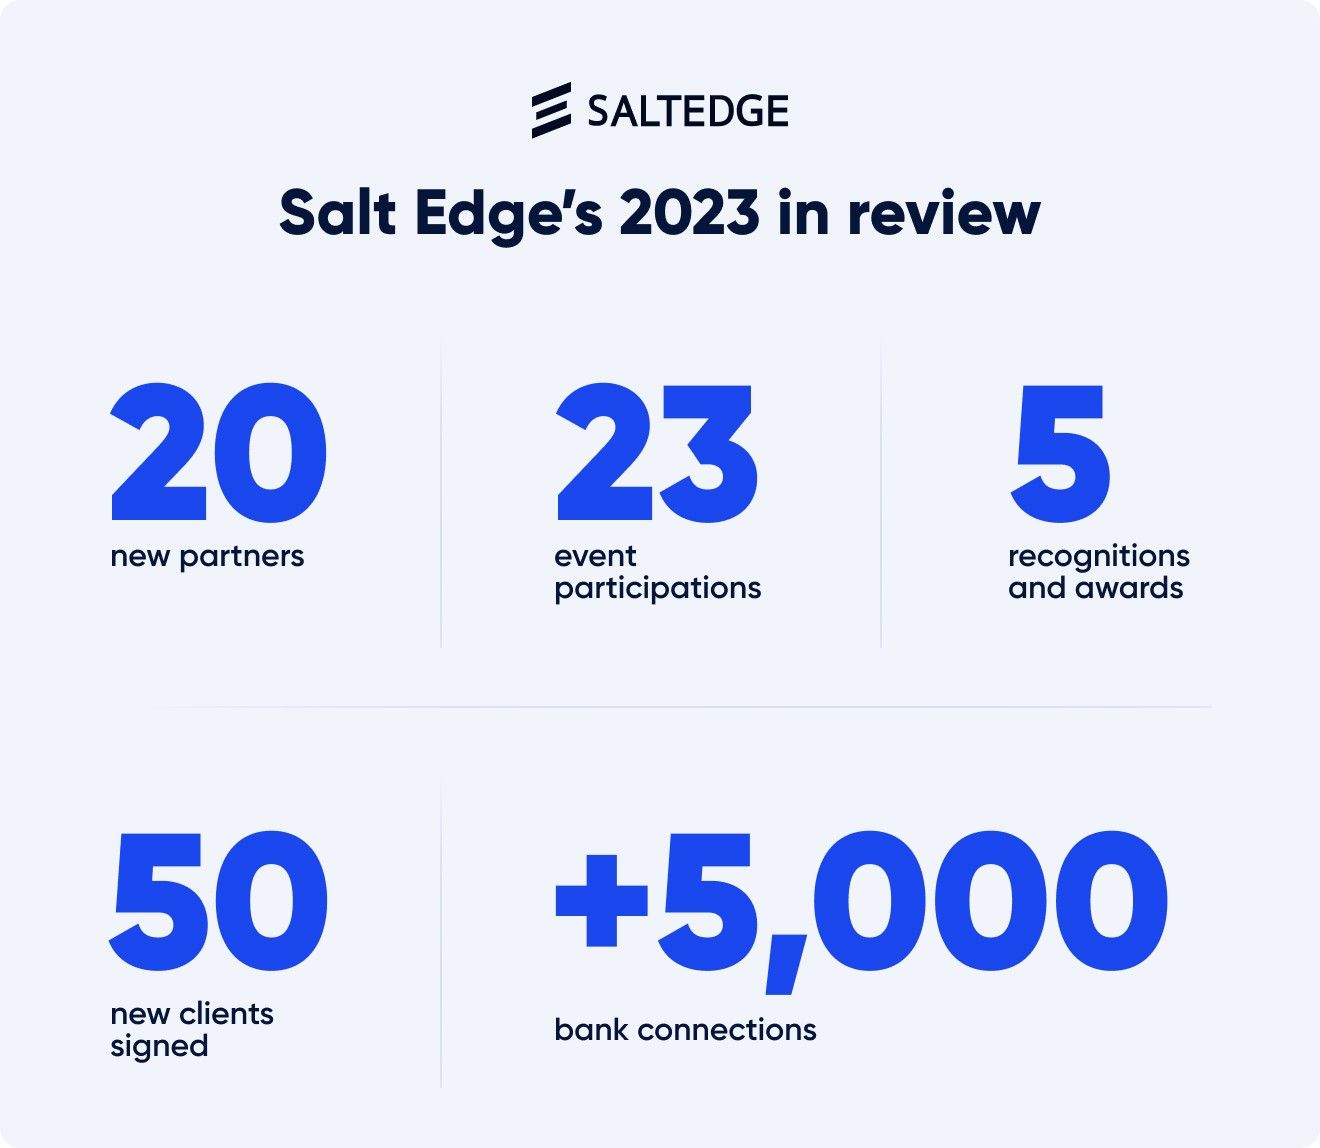 Salt Edge 2023 in numbers